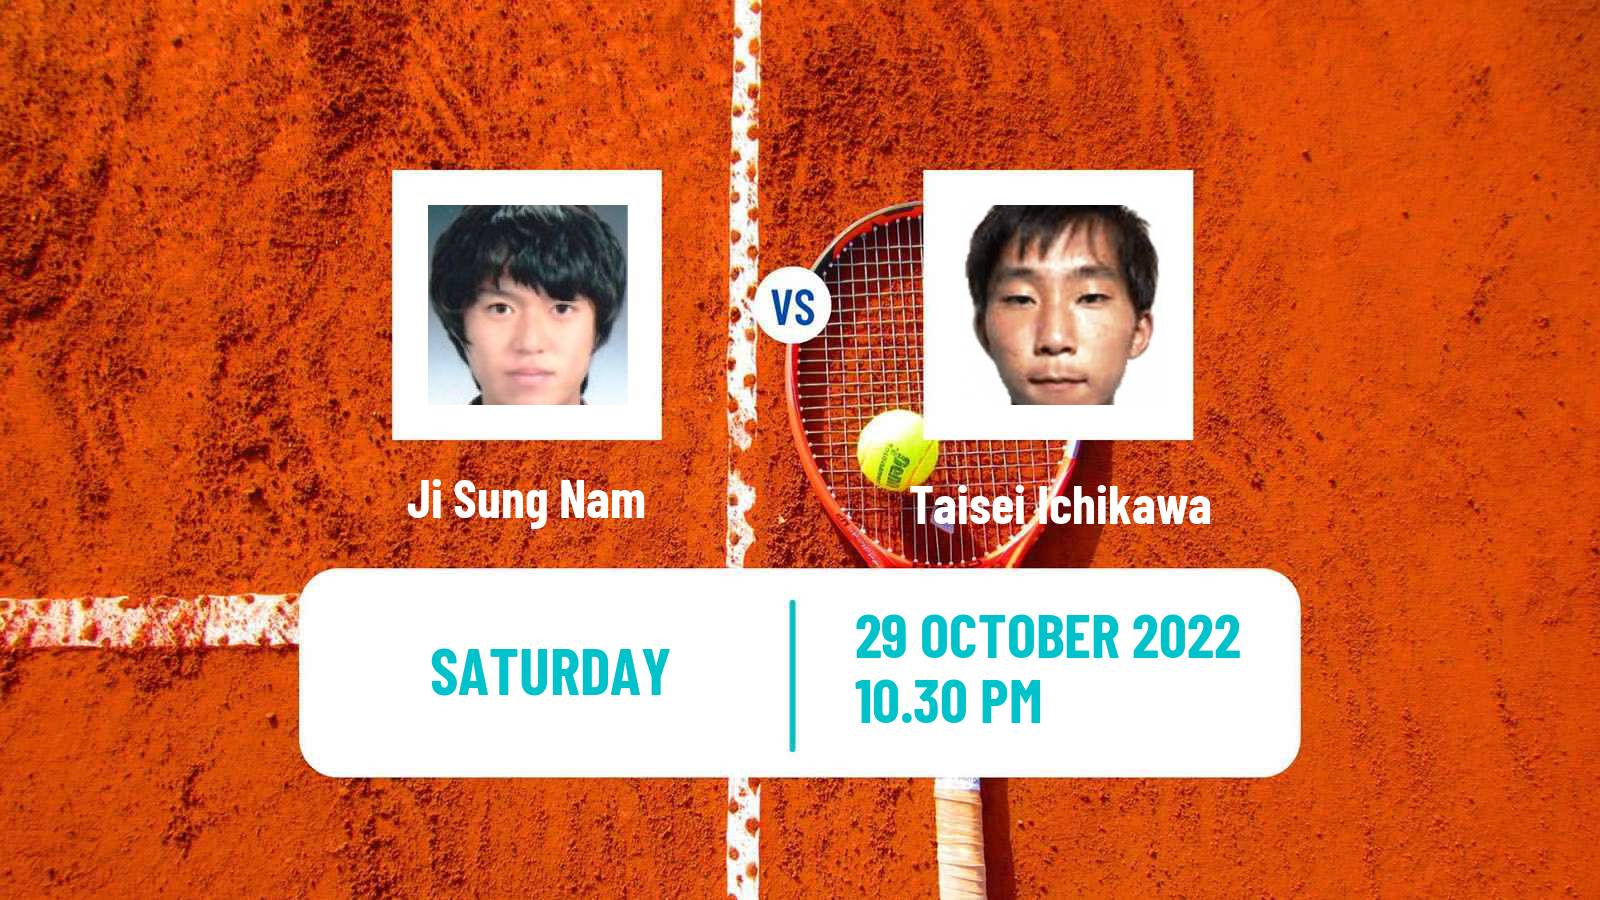 Tennis ATP Challenger Ji Sung Nam - Taisei Ichikawa